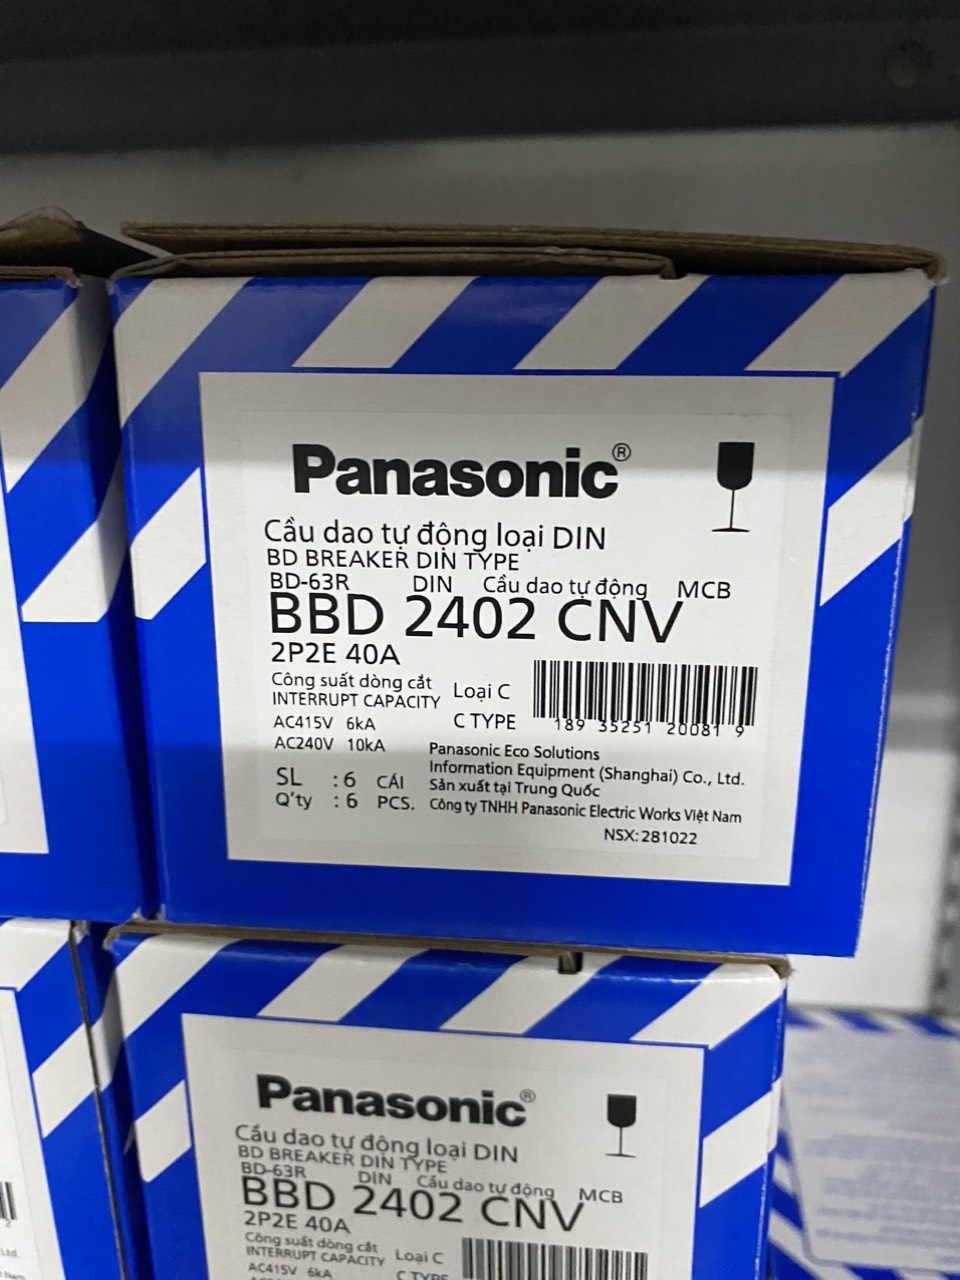 Panasonic - Cầu dao tự động Aptomat CB 2P 2 Pha 2 tép Panasonic 16A 20A 25A 32A 40A 50A 63A